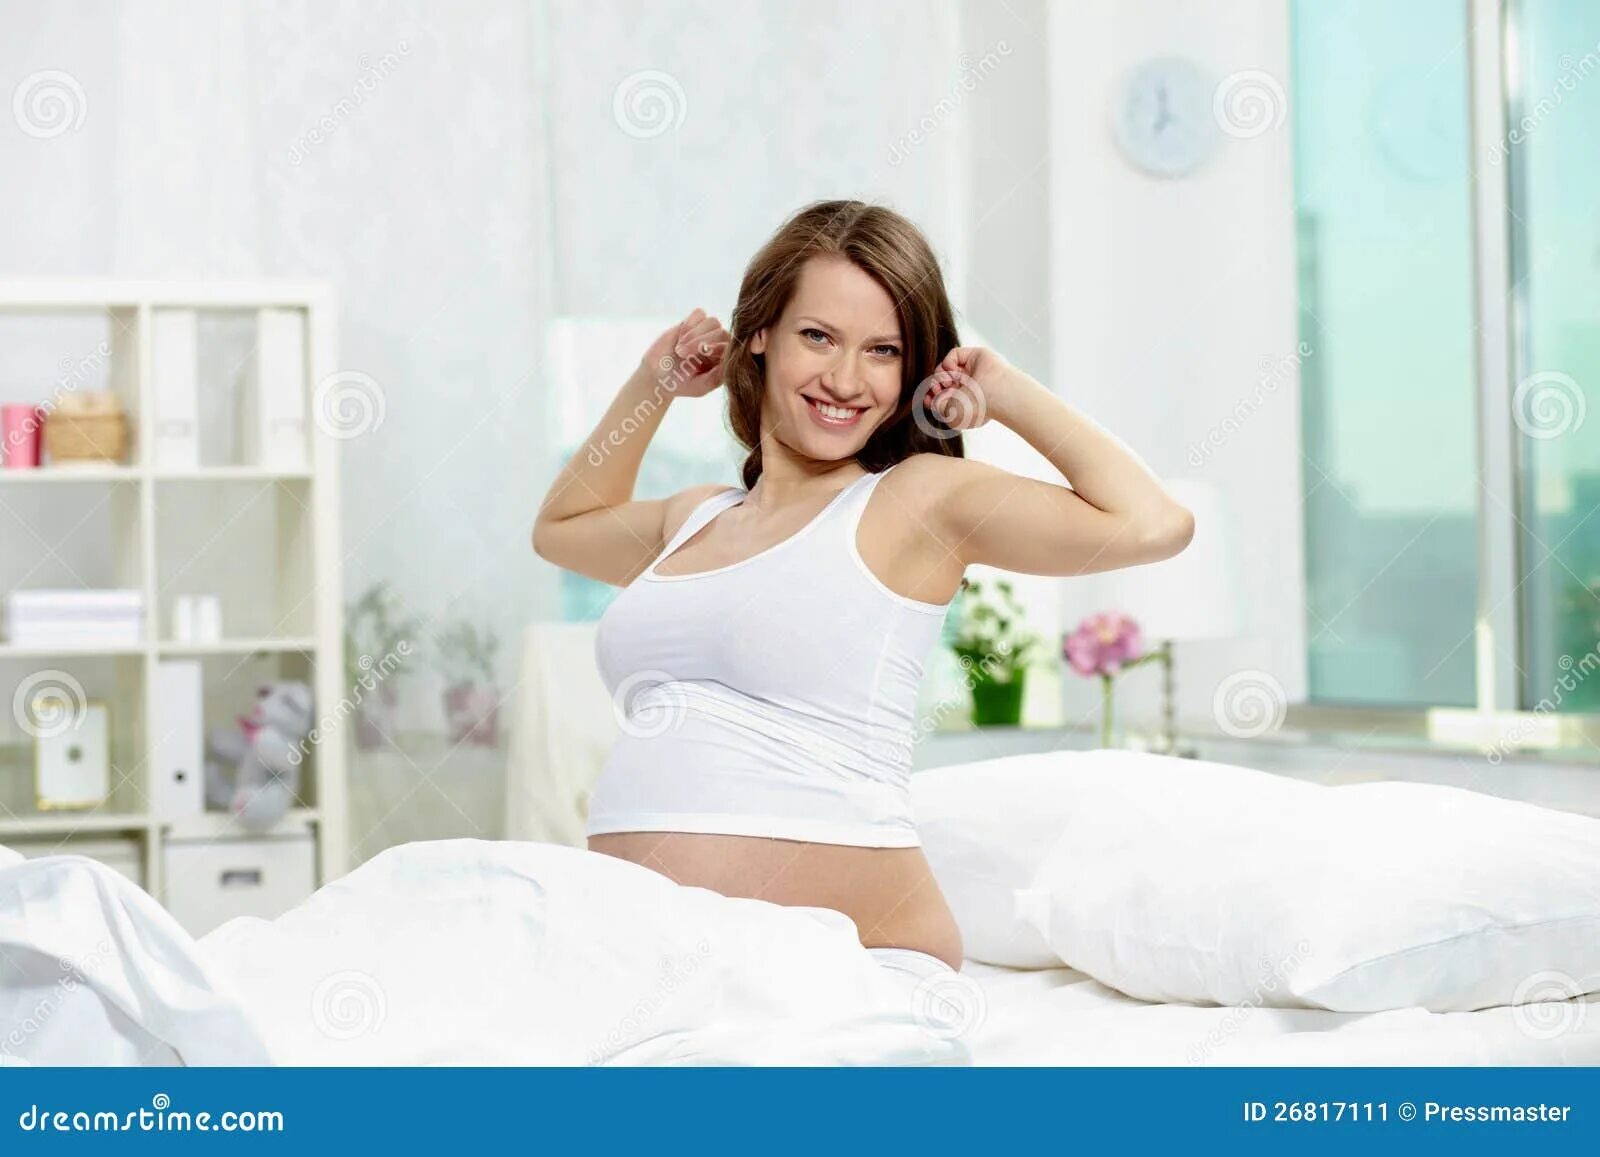 Забеременеть утром. Доброе утро беременной. Доброе утро беременной женщине. С добрым утром беременной девушке. Открытка с добрым утром беременной женщине.